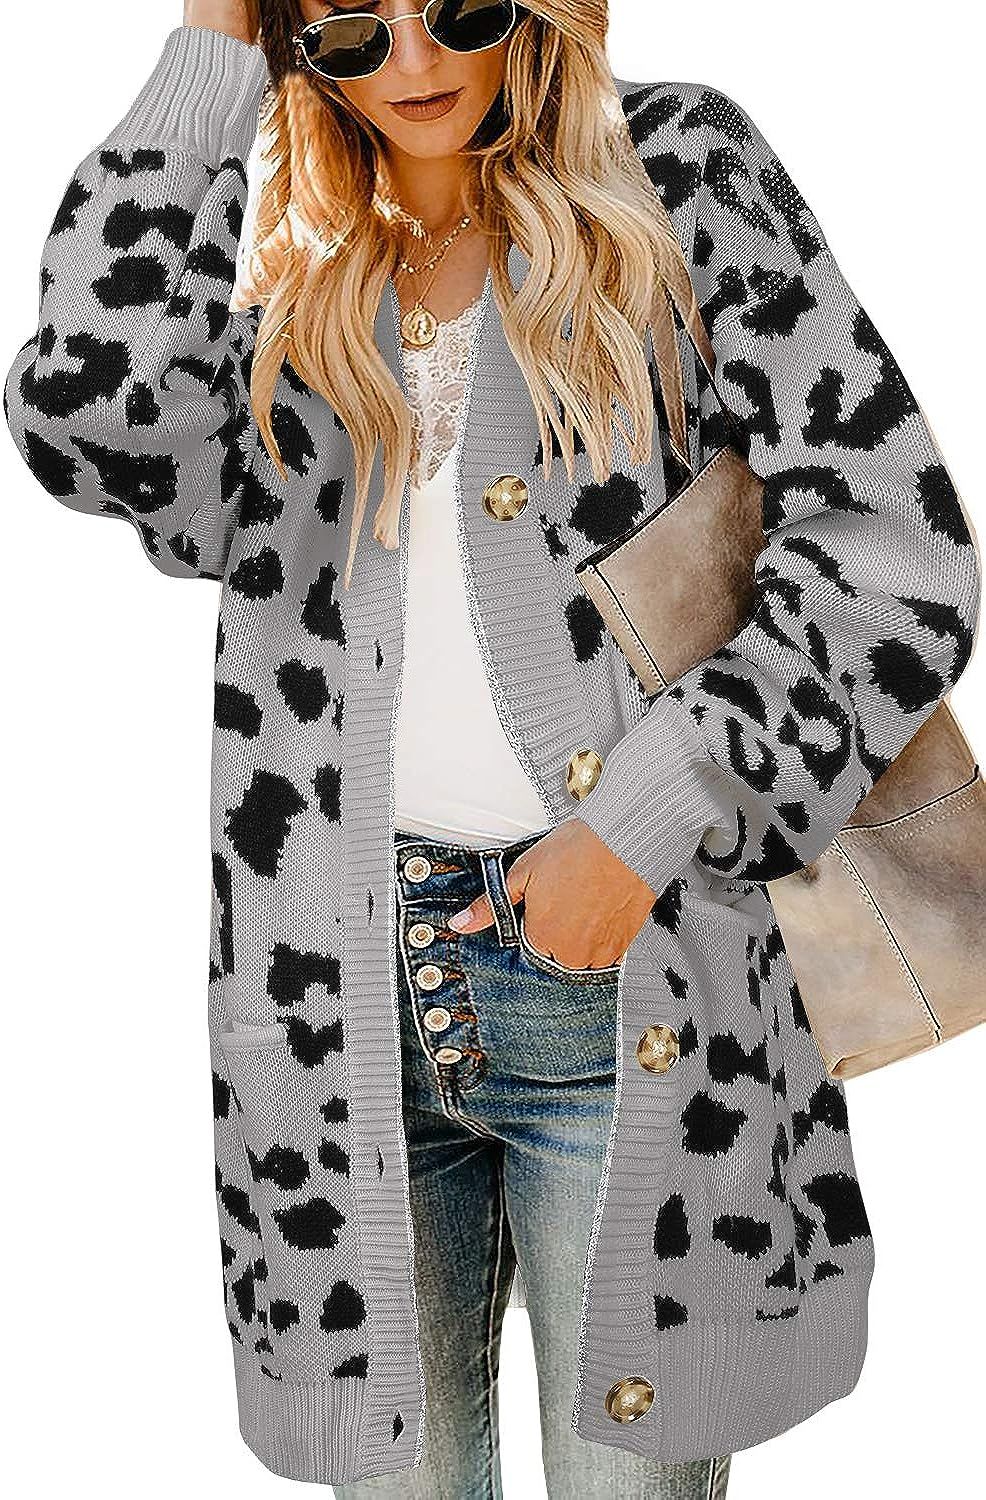 Ferbia Women Leopard Cardigan Long Open Front Sweaters Oversized Loose Knit Coat Draped Jackets w... | Amazon (US)